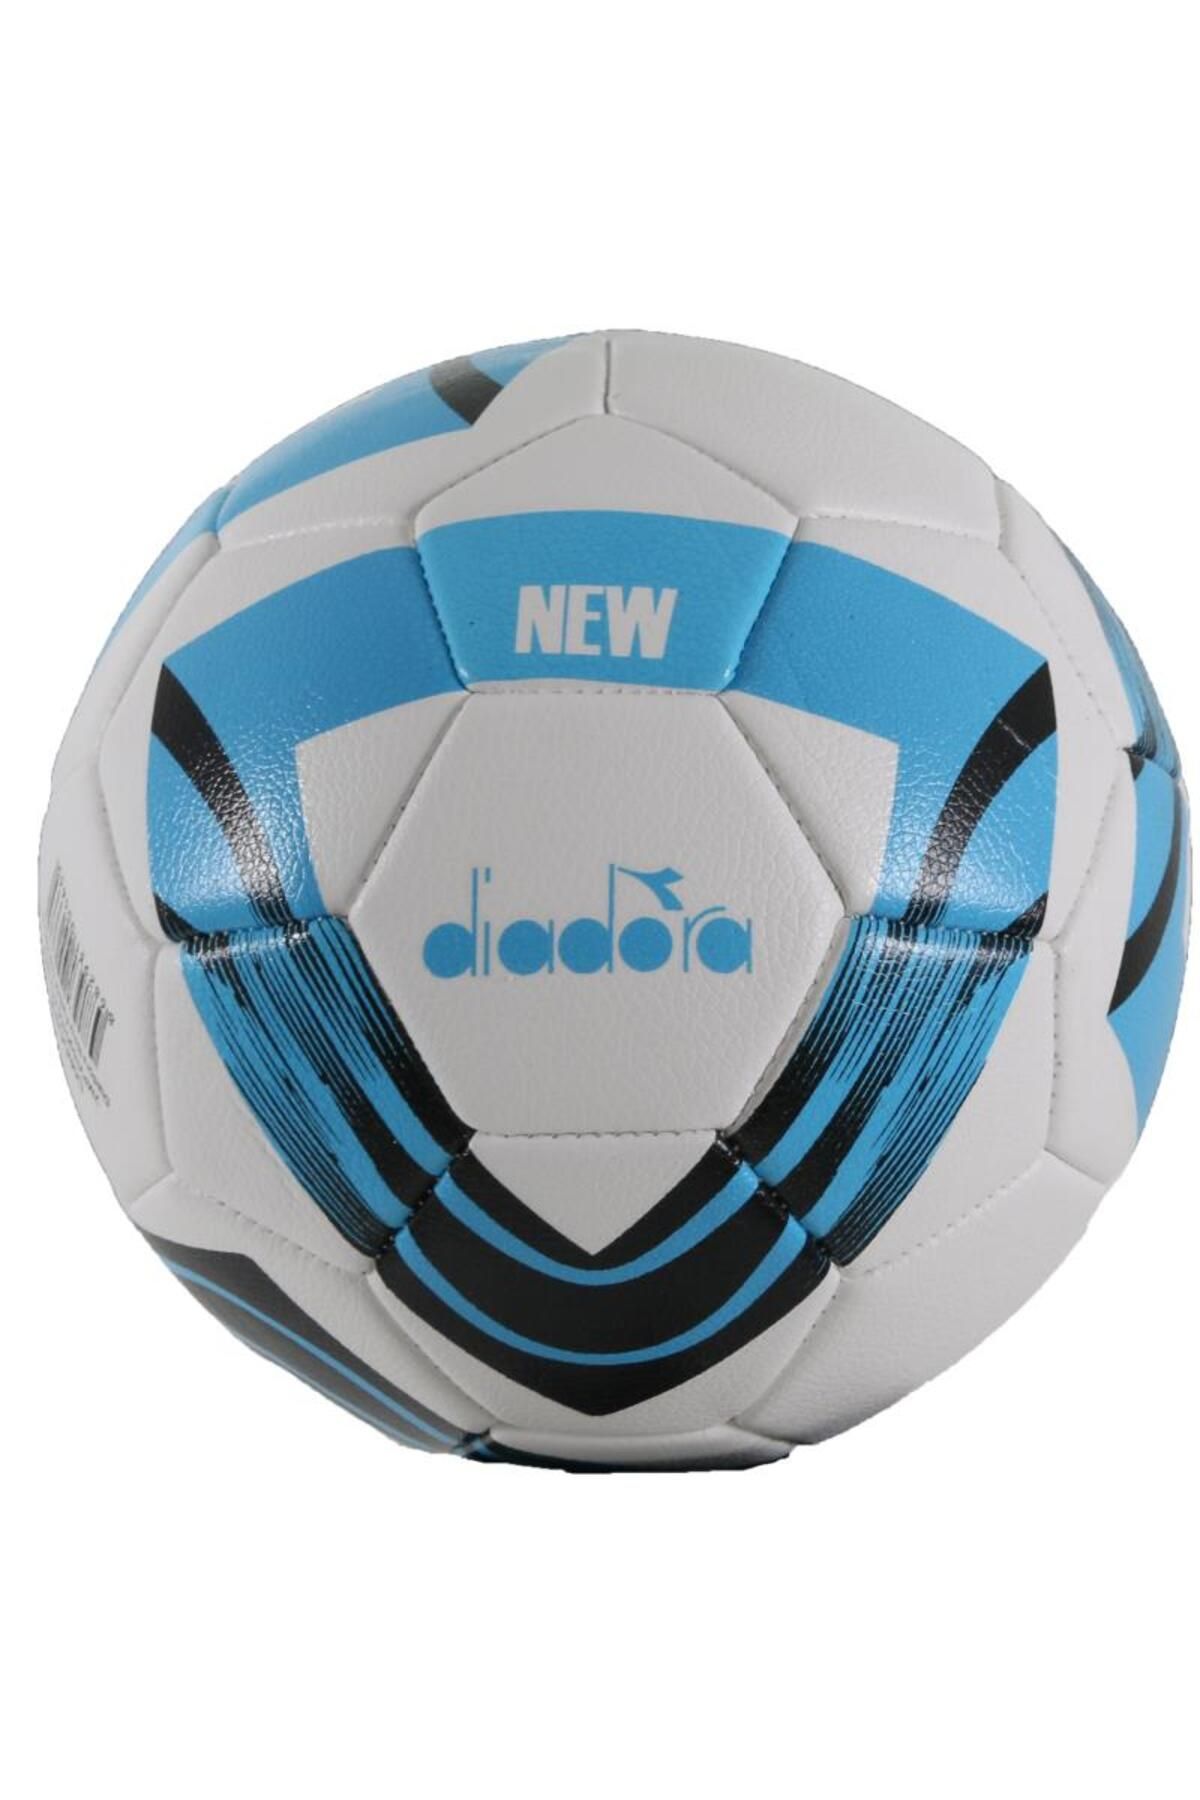 Diadora New Futbol Topu Beyaz - Siyah - Mavi No 4